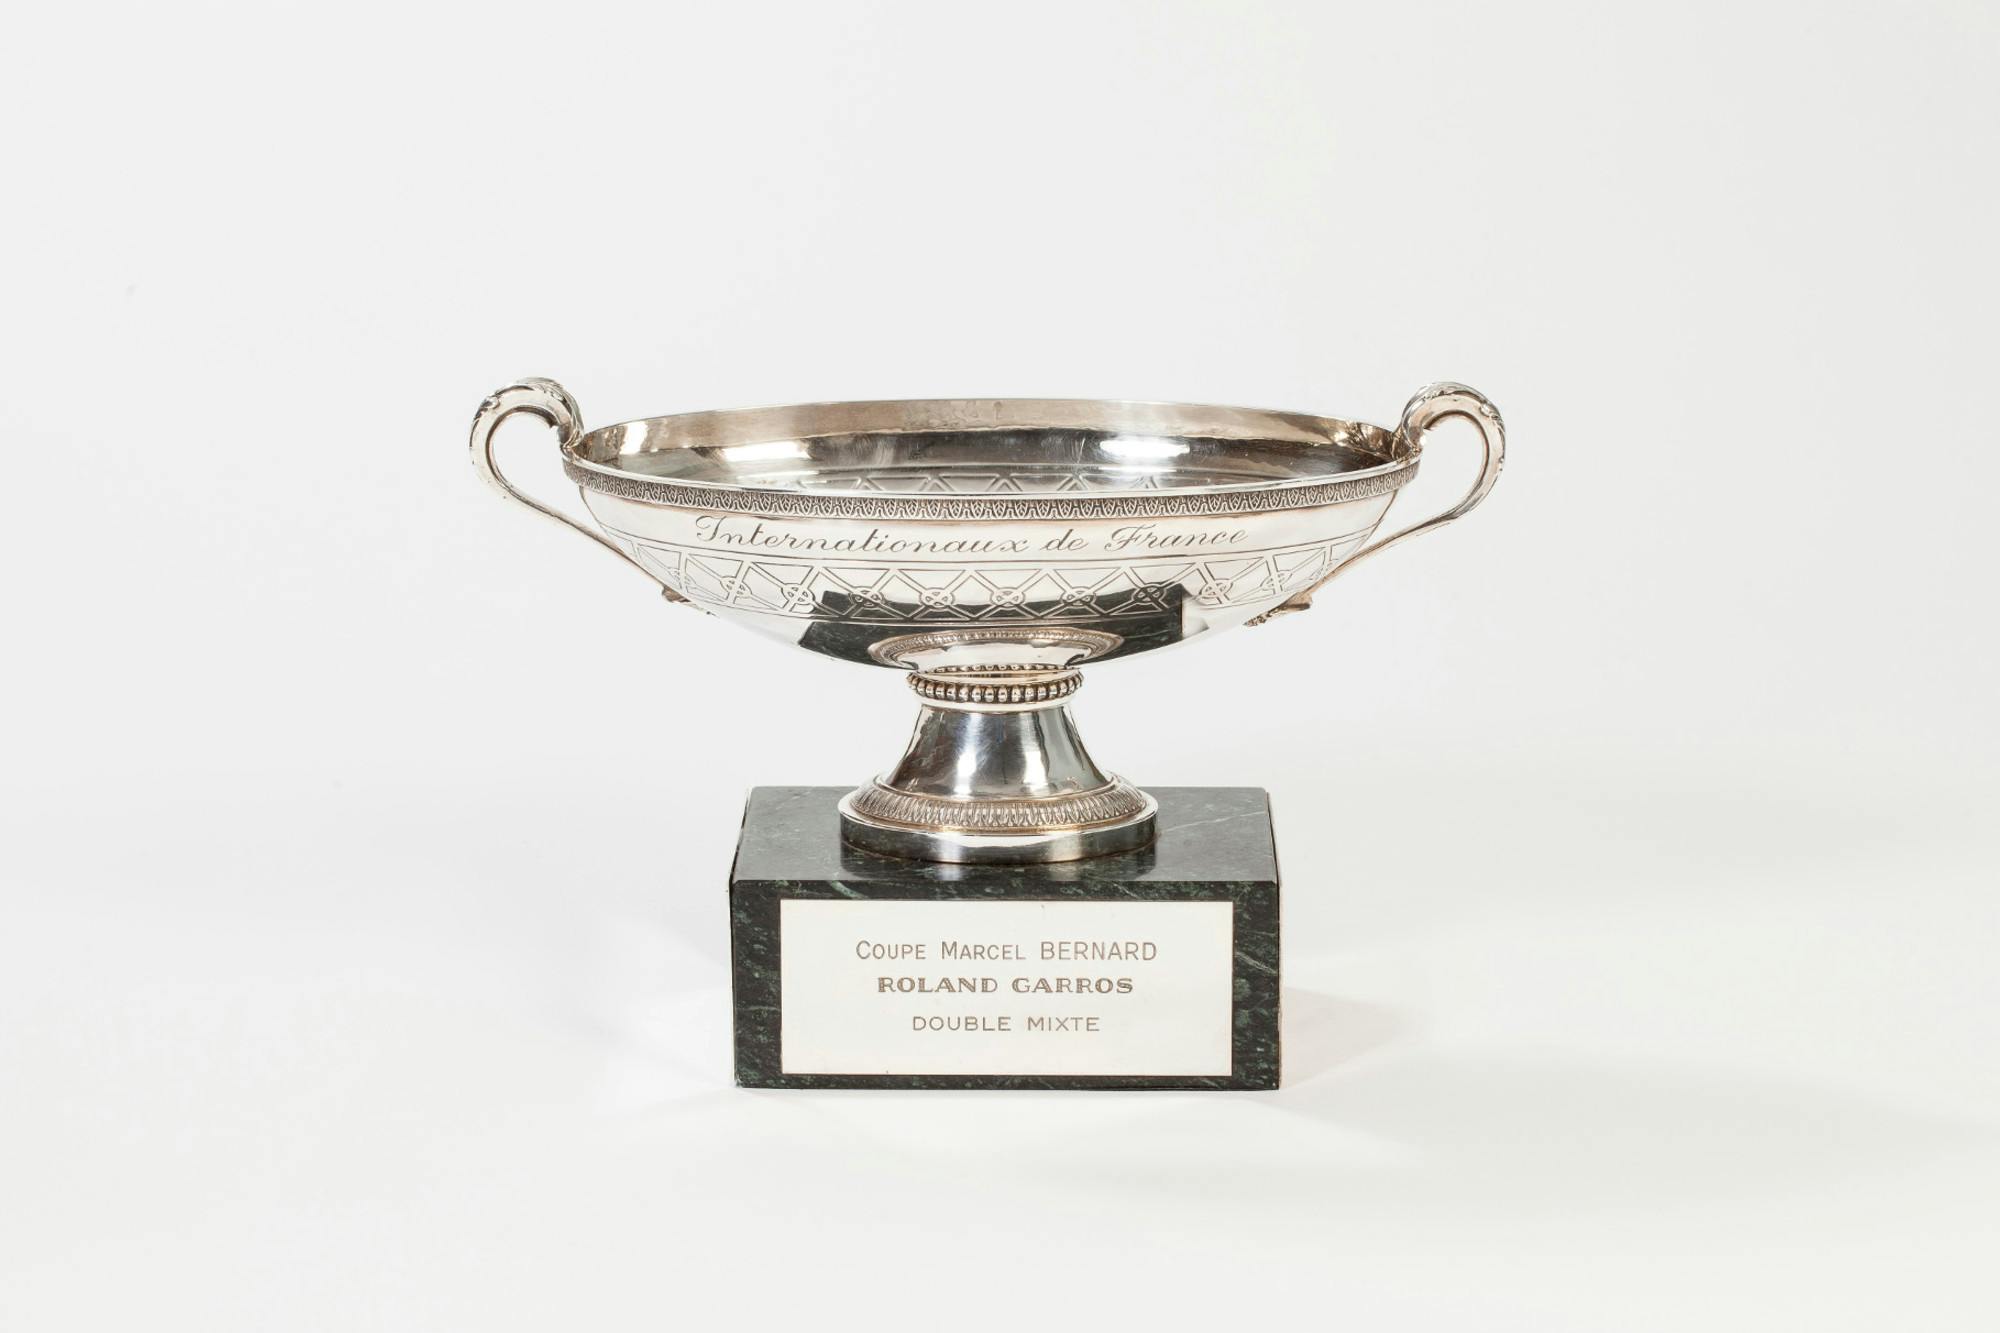 coupe Marcel-Bernard double mixte trophée Roland-Garros / Marcel Bernard's cup mixed doubles Roland-Garros trophy.